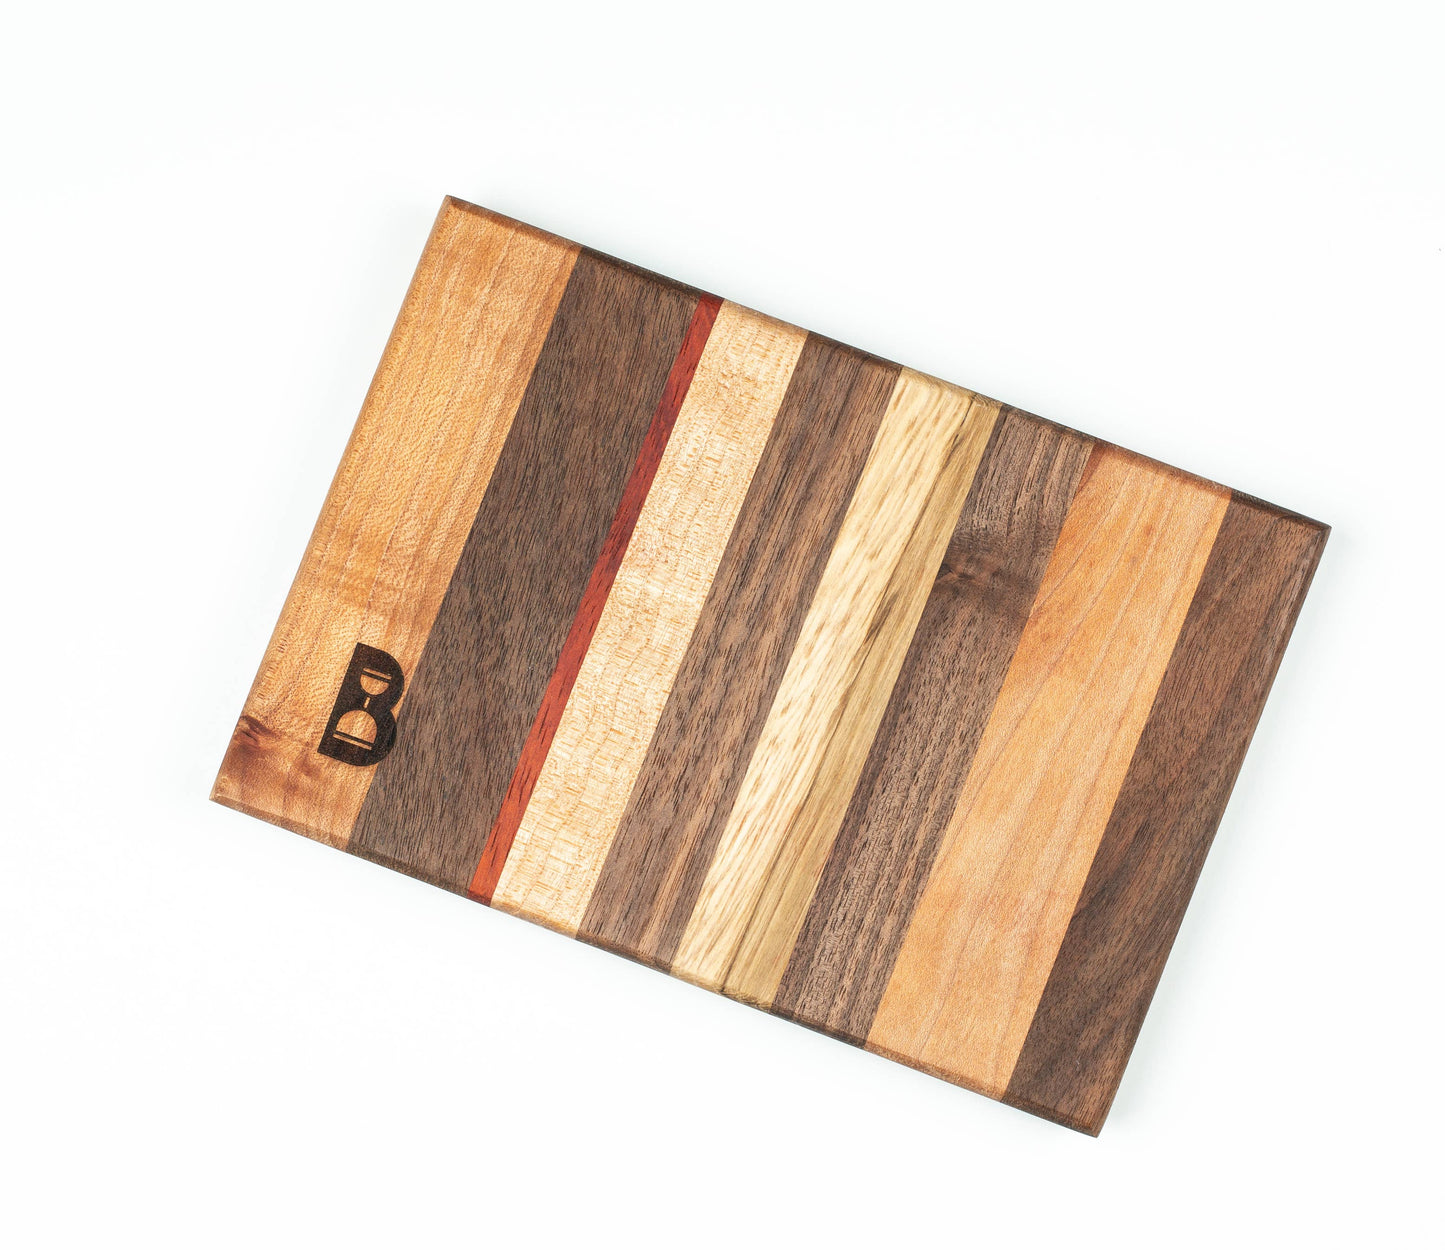 The Garnish Board - Handmade Wood